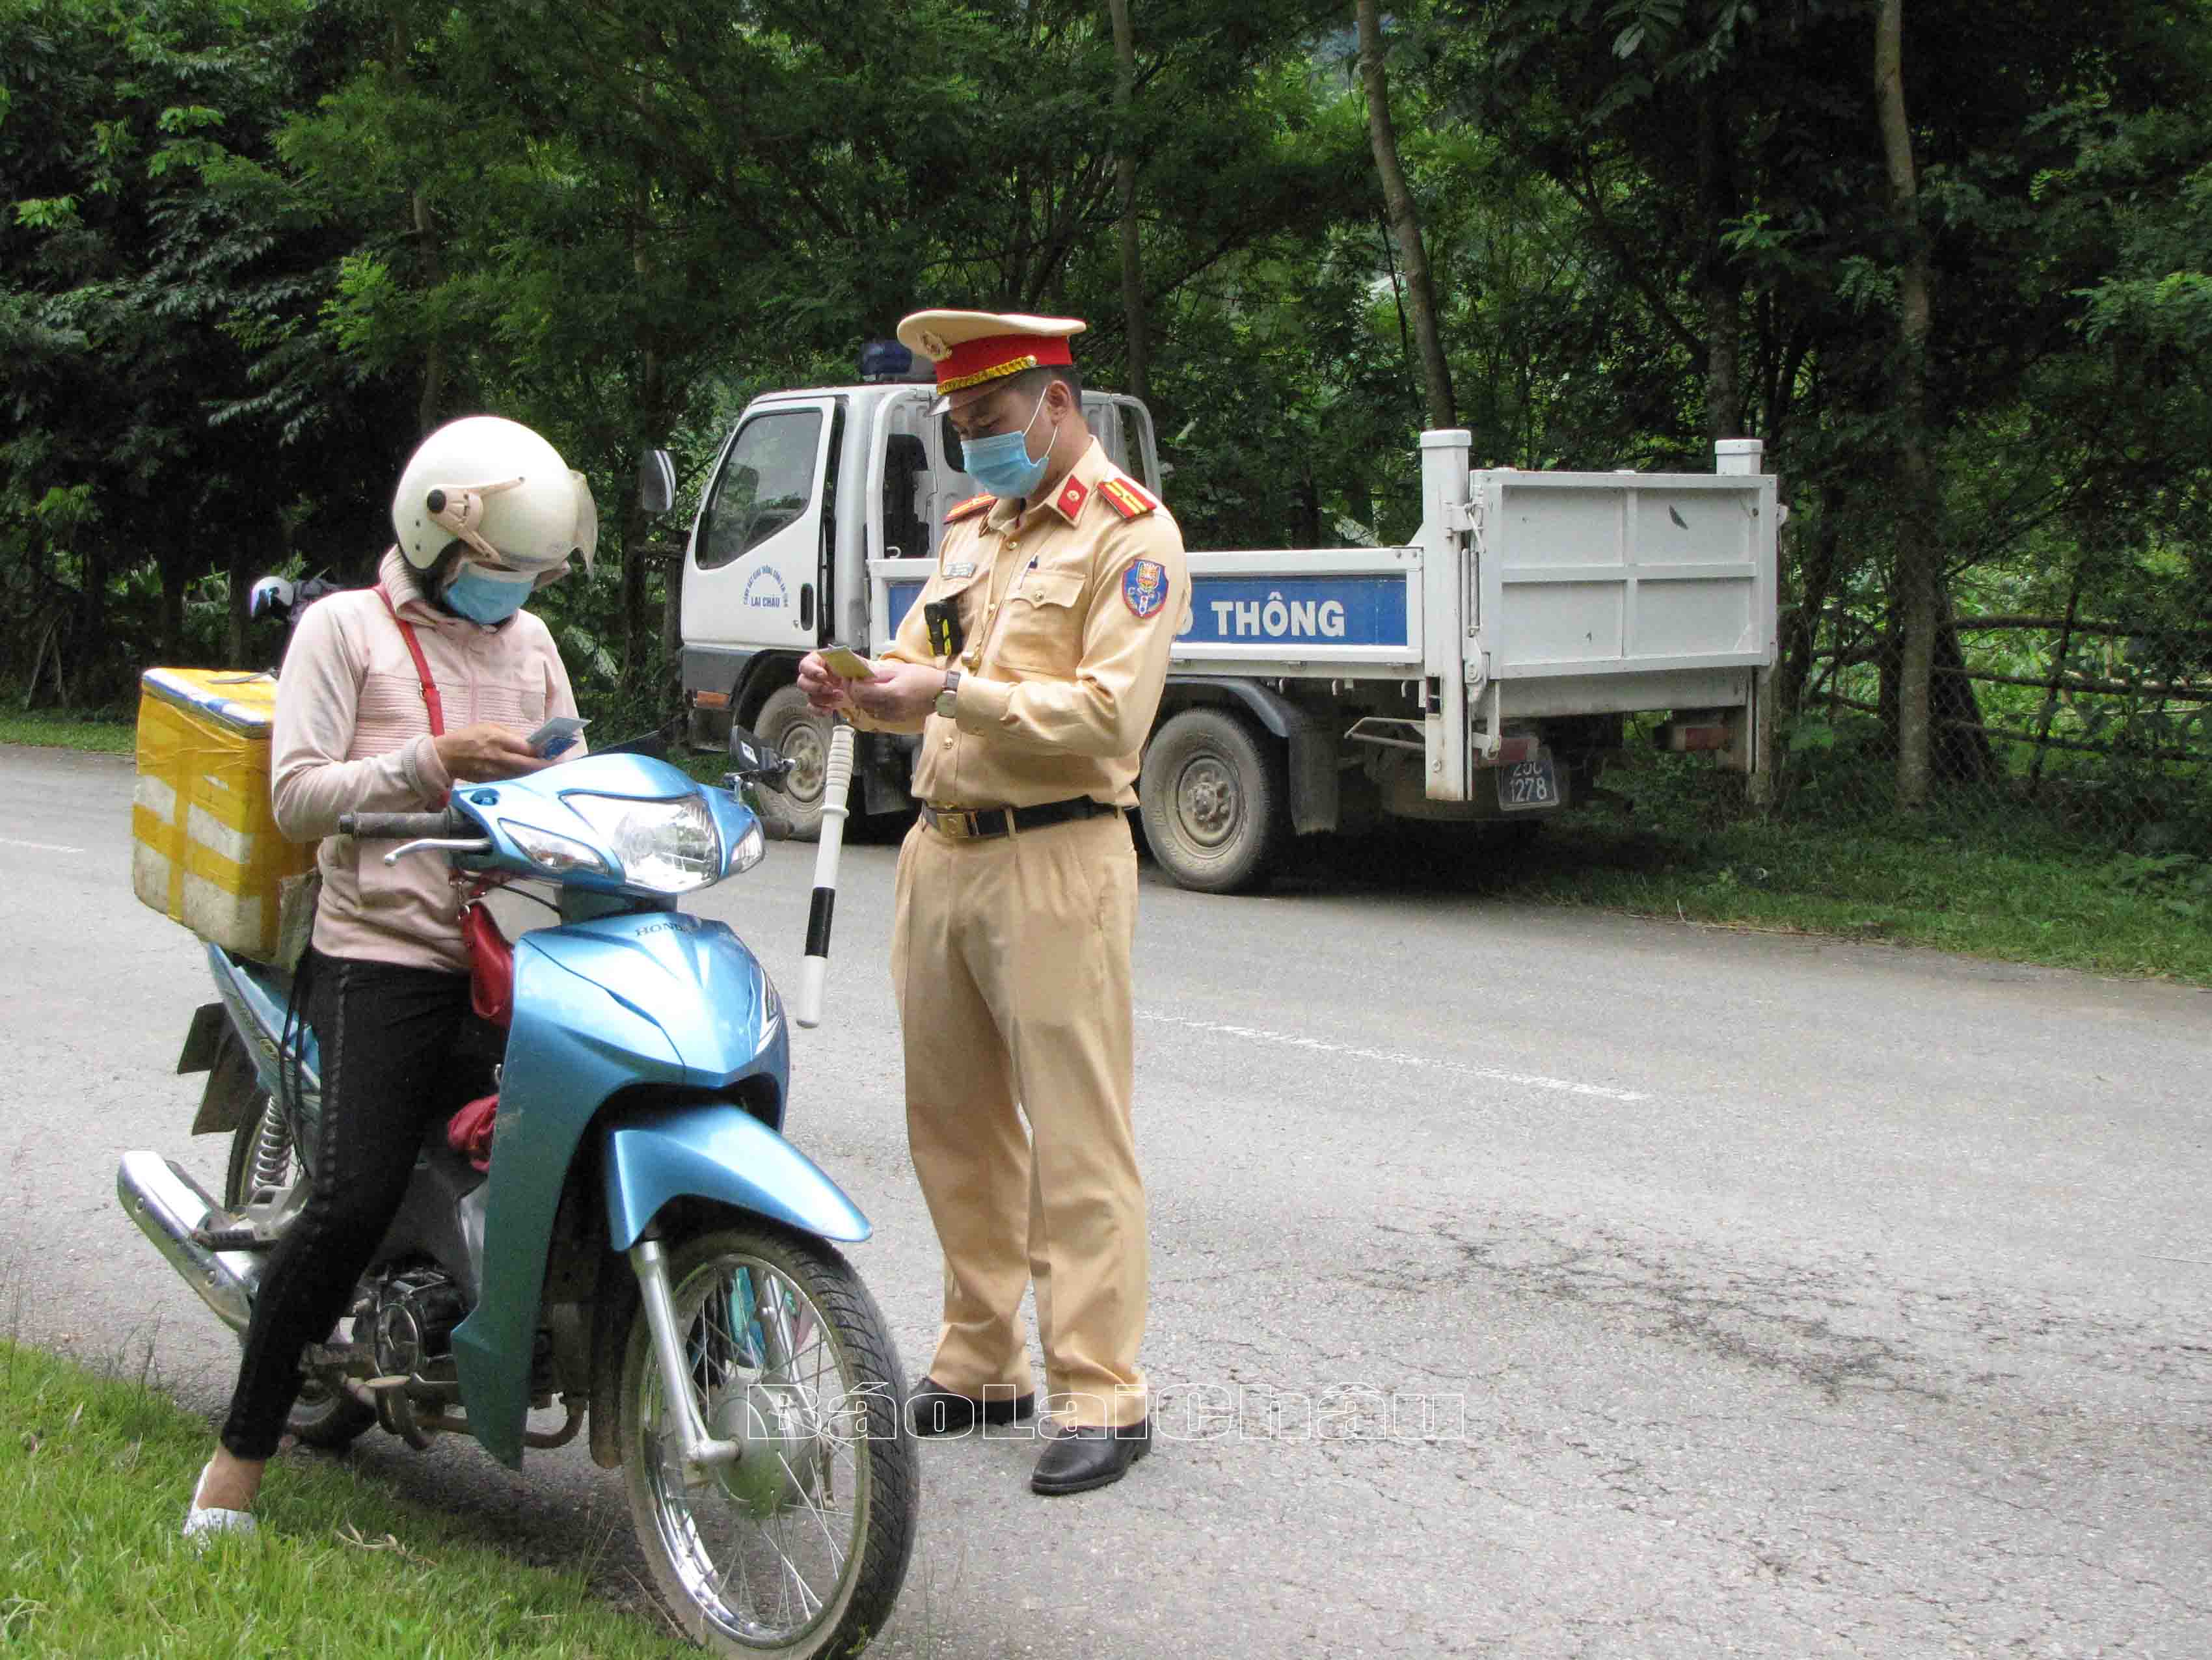 Lực Lượng Cảnh sát giao thông trật tự (Công an huyện Nậm Nhùn) tuần tra, kiểm soát người, phương tiện tham gia giao thông.